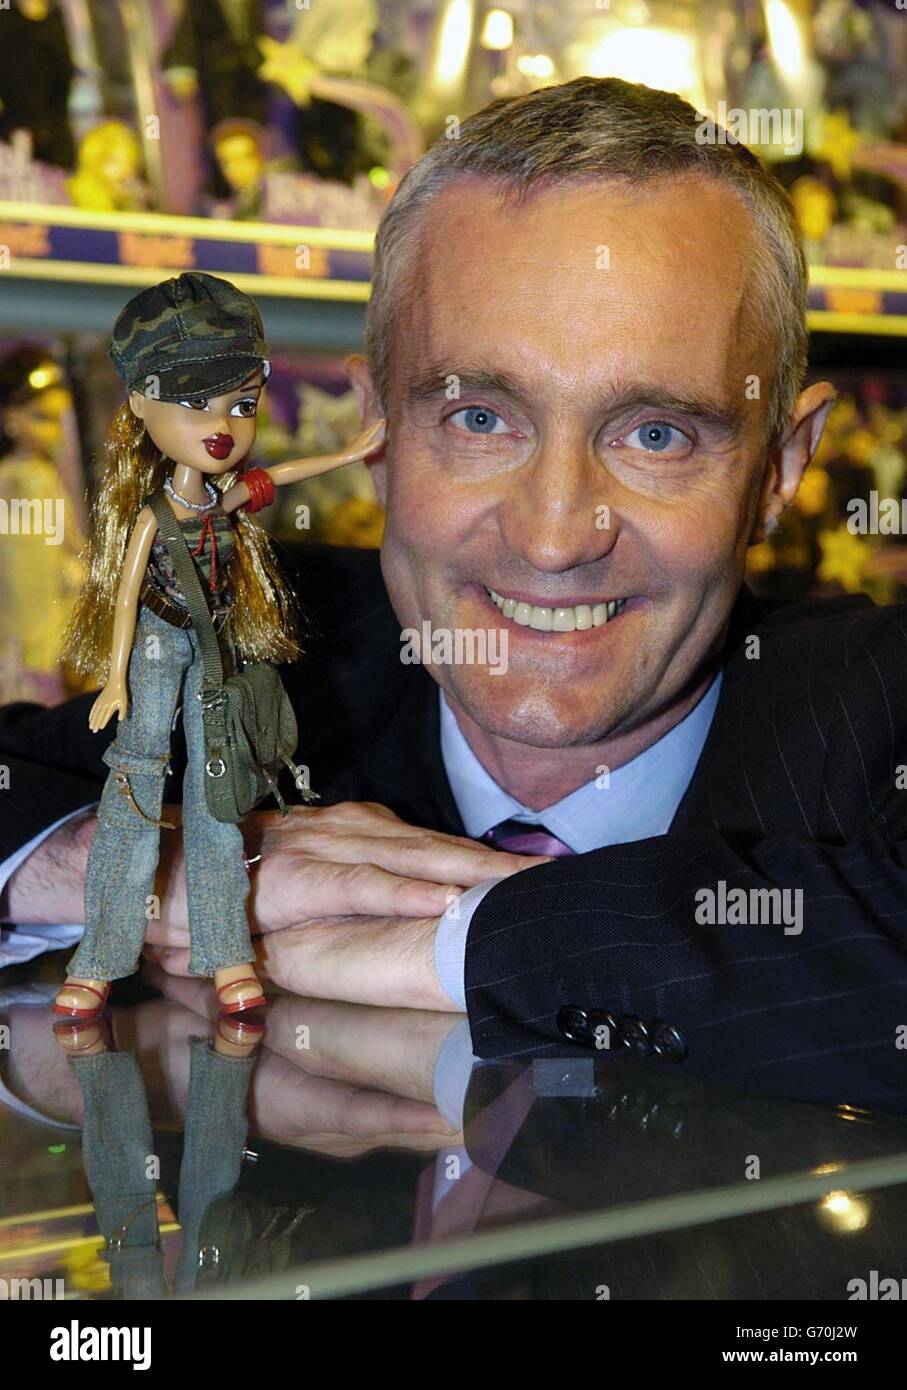 Nick Austin, directeur général de Vivid Imaginations, pose avec une poupée  Bratz dans la boutique Bratz de Hamleys à Londres.Le nouveau jouet no 1 du  Royaume-Uni a volé la couronne de Barbie